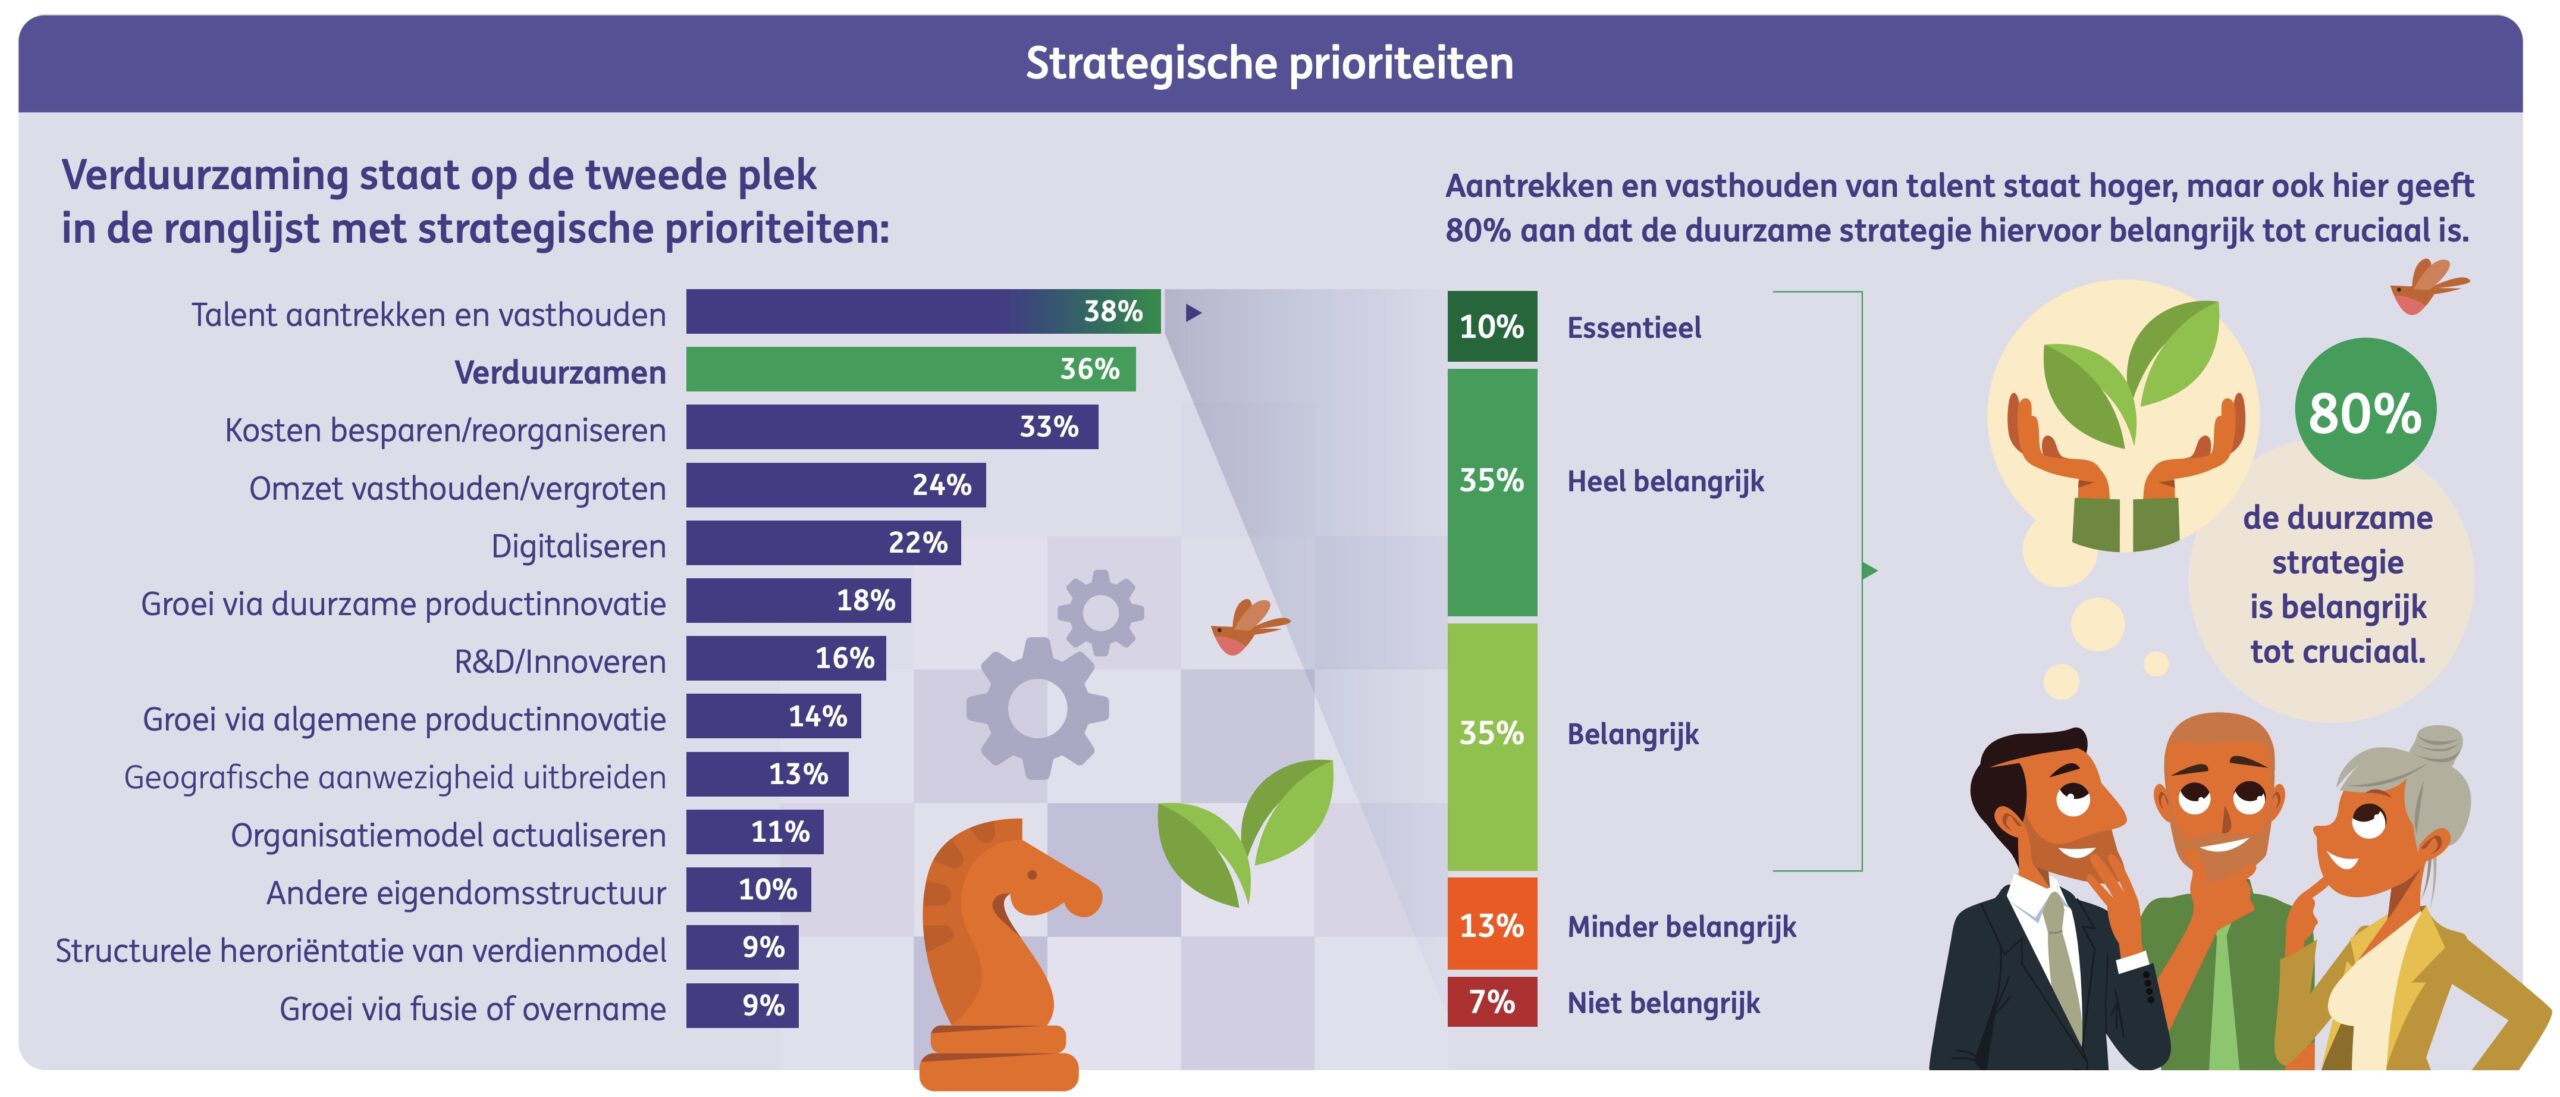 Strategische prioriteiten van Nederlandse bedrijven in 2023. Bron: ING